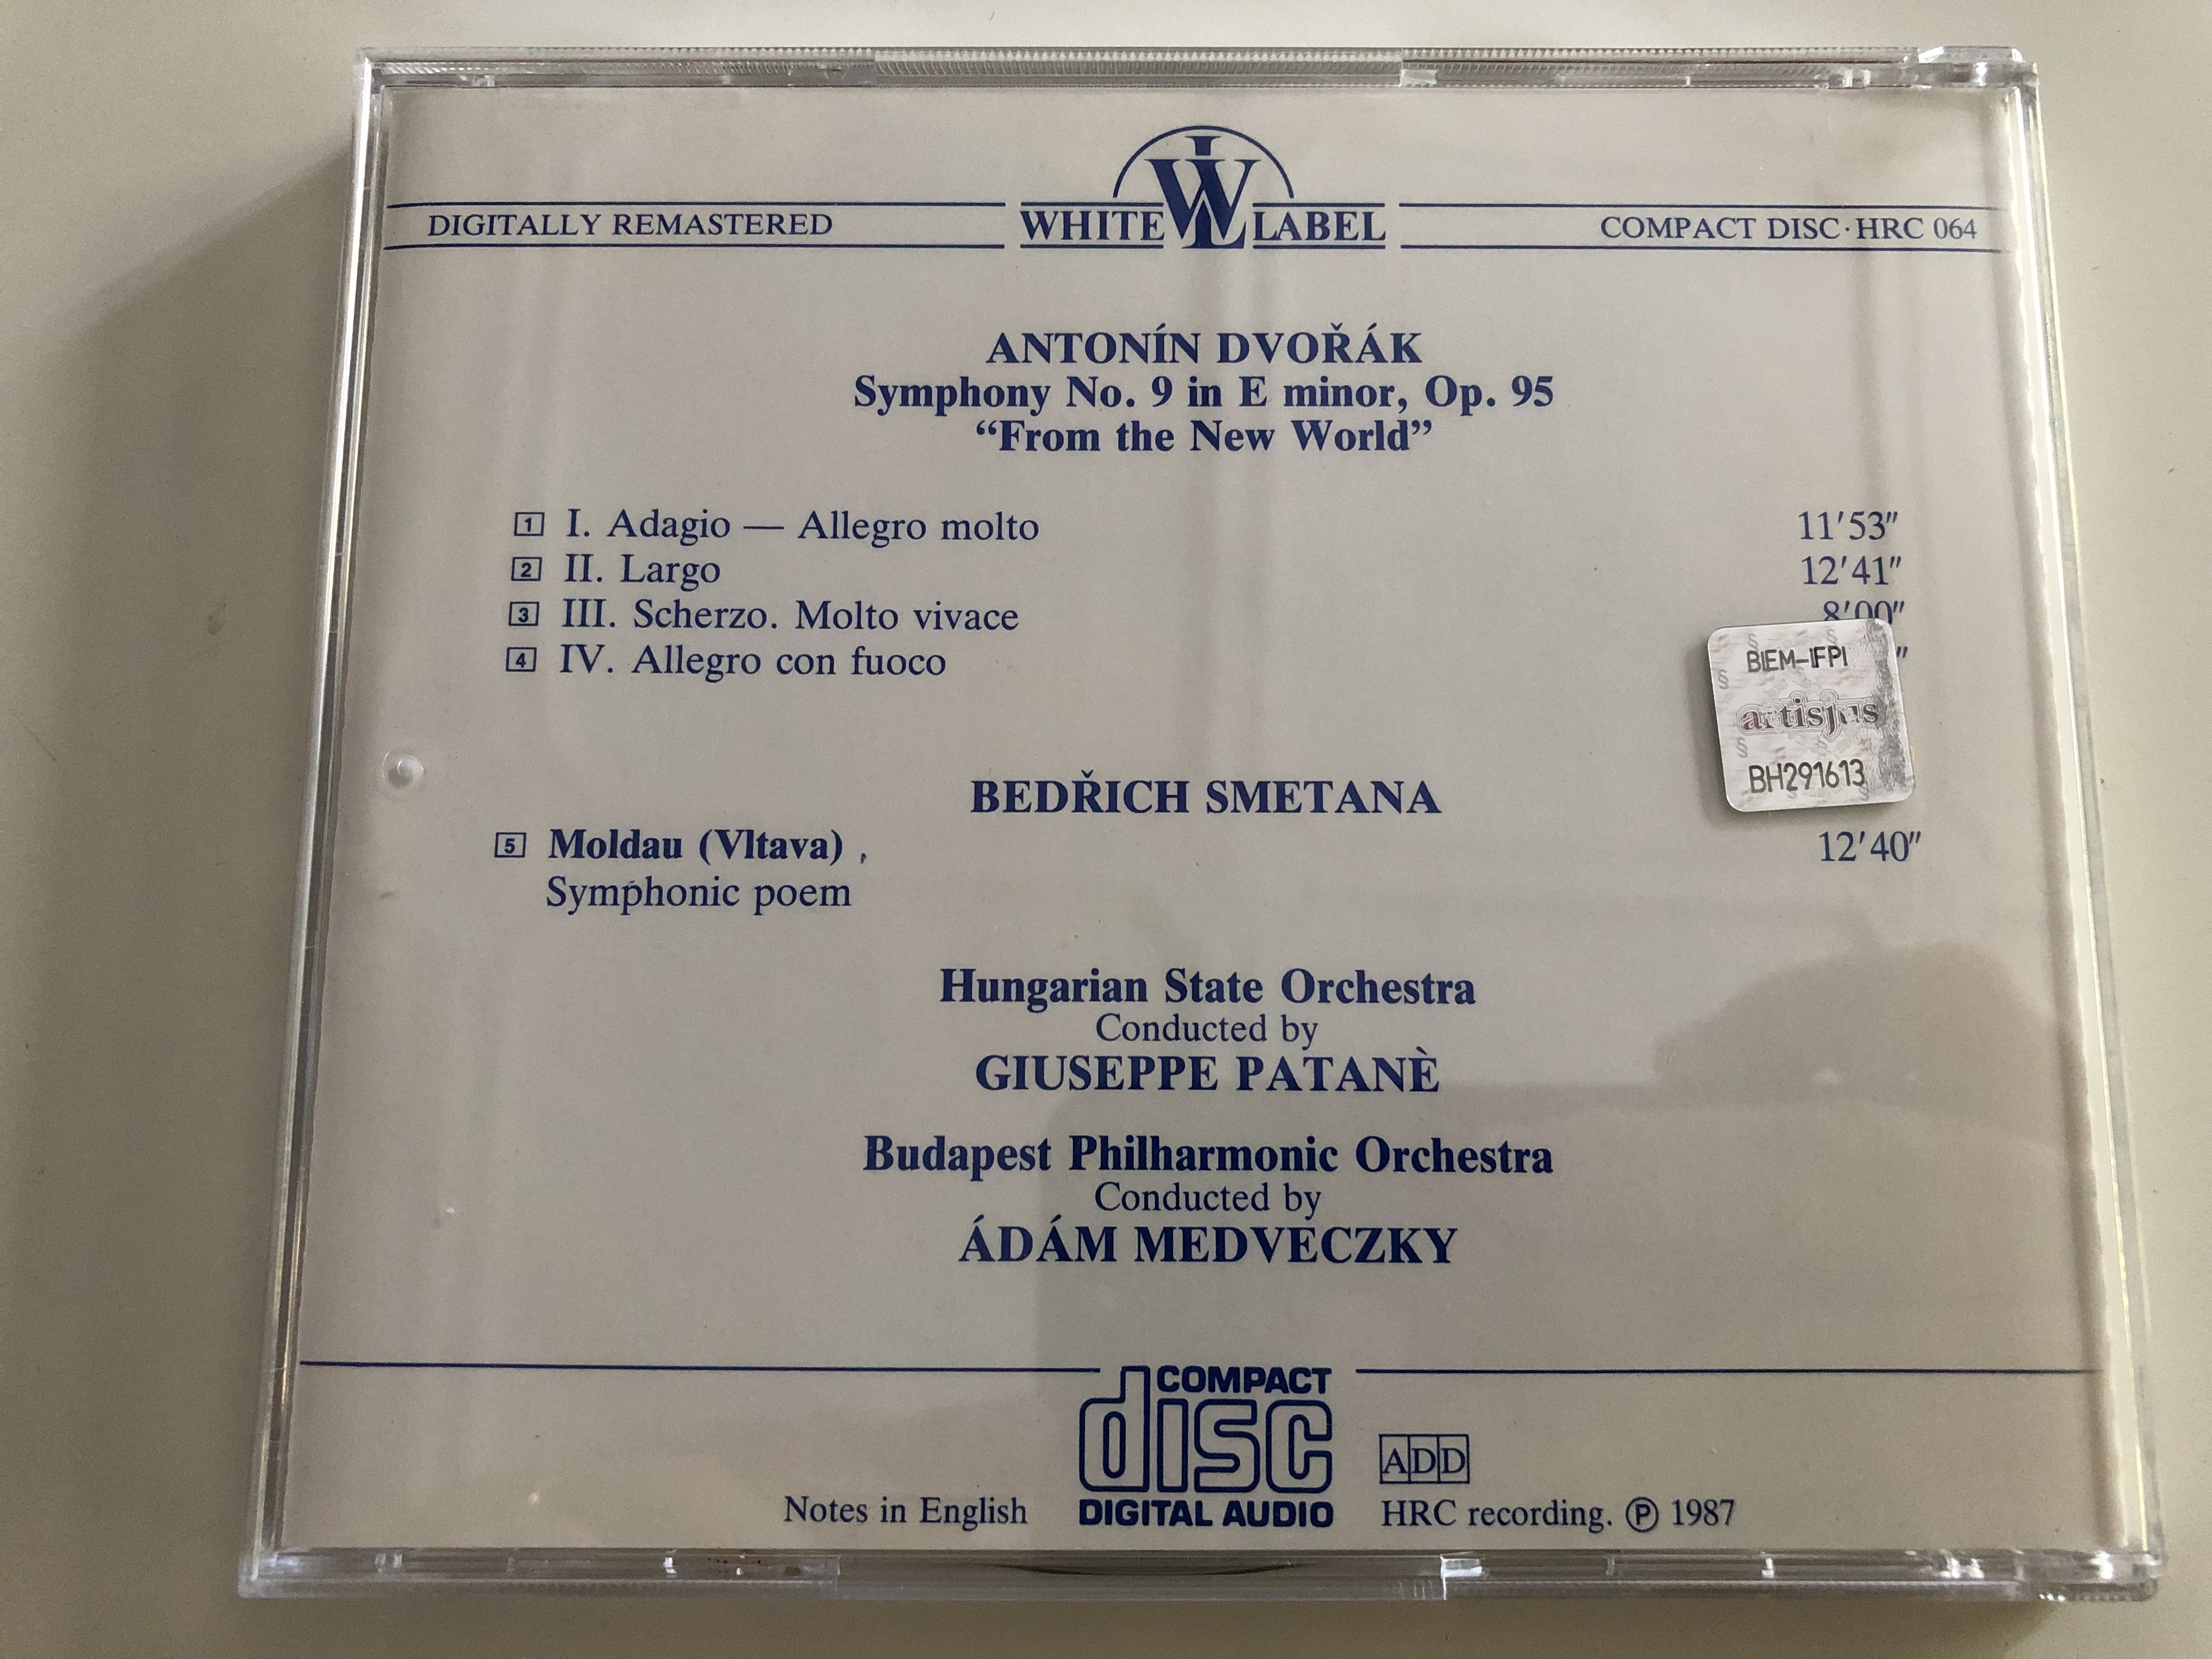 dvor-k-from-the-new-world-symphony-no.-9-giuseppe-patan-moldau-smetana-d-m-medveczky-hungaroton-white-label-audio-cd-1987-hrc-064-6-.jpg